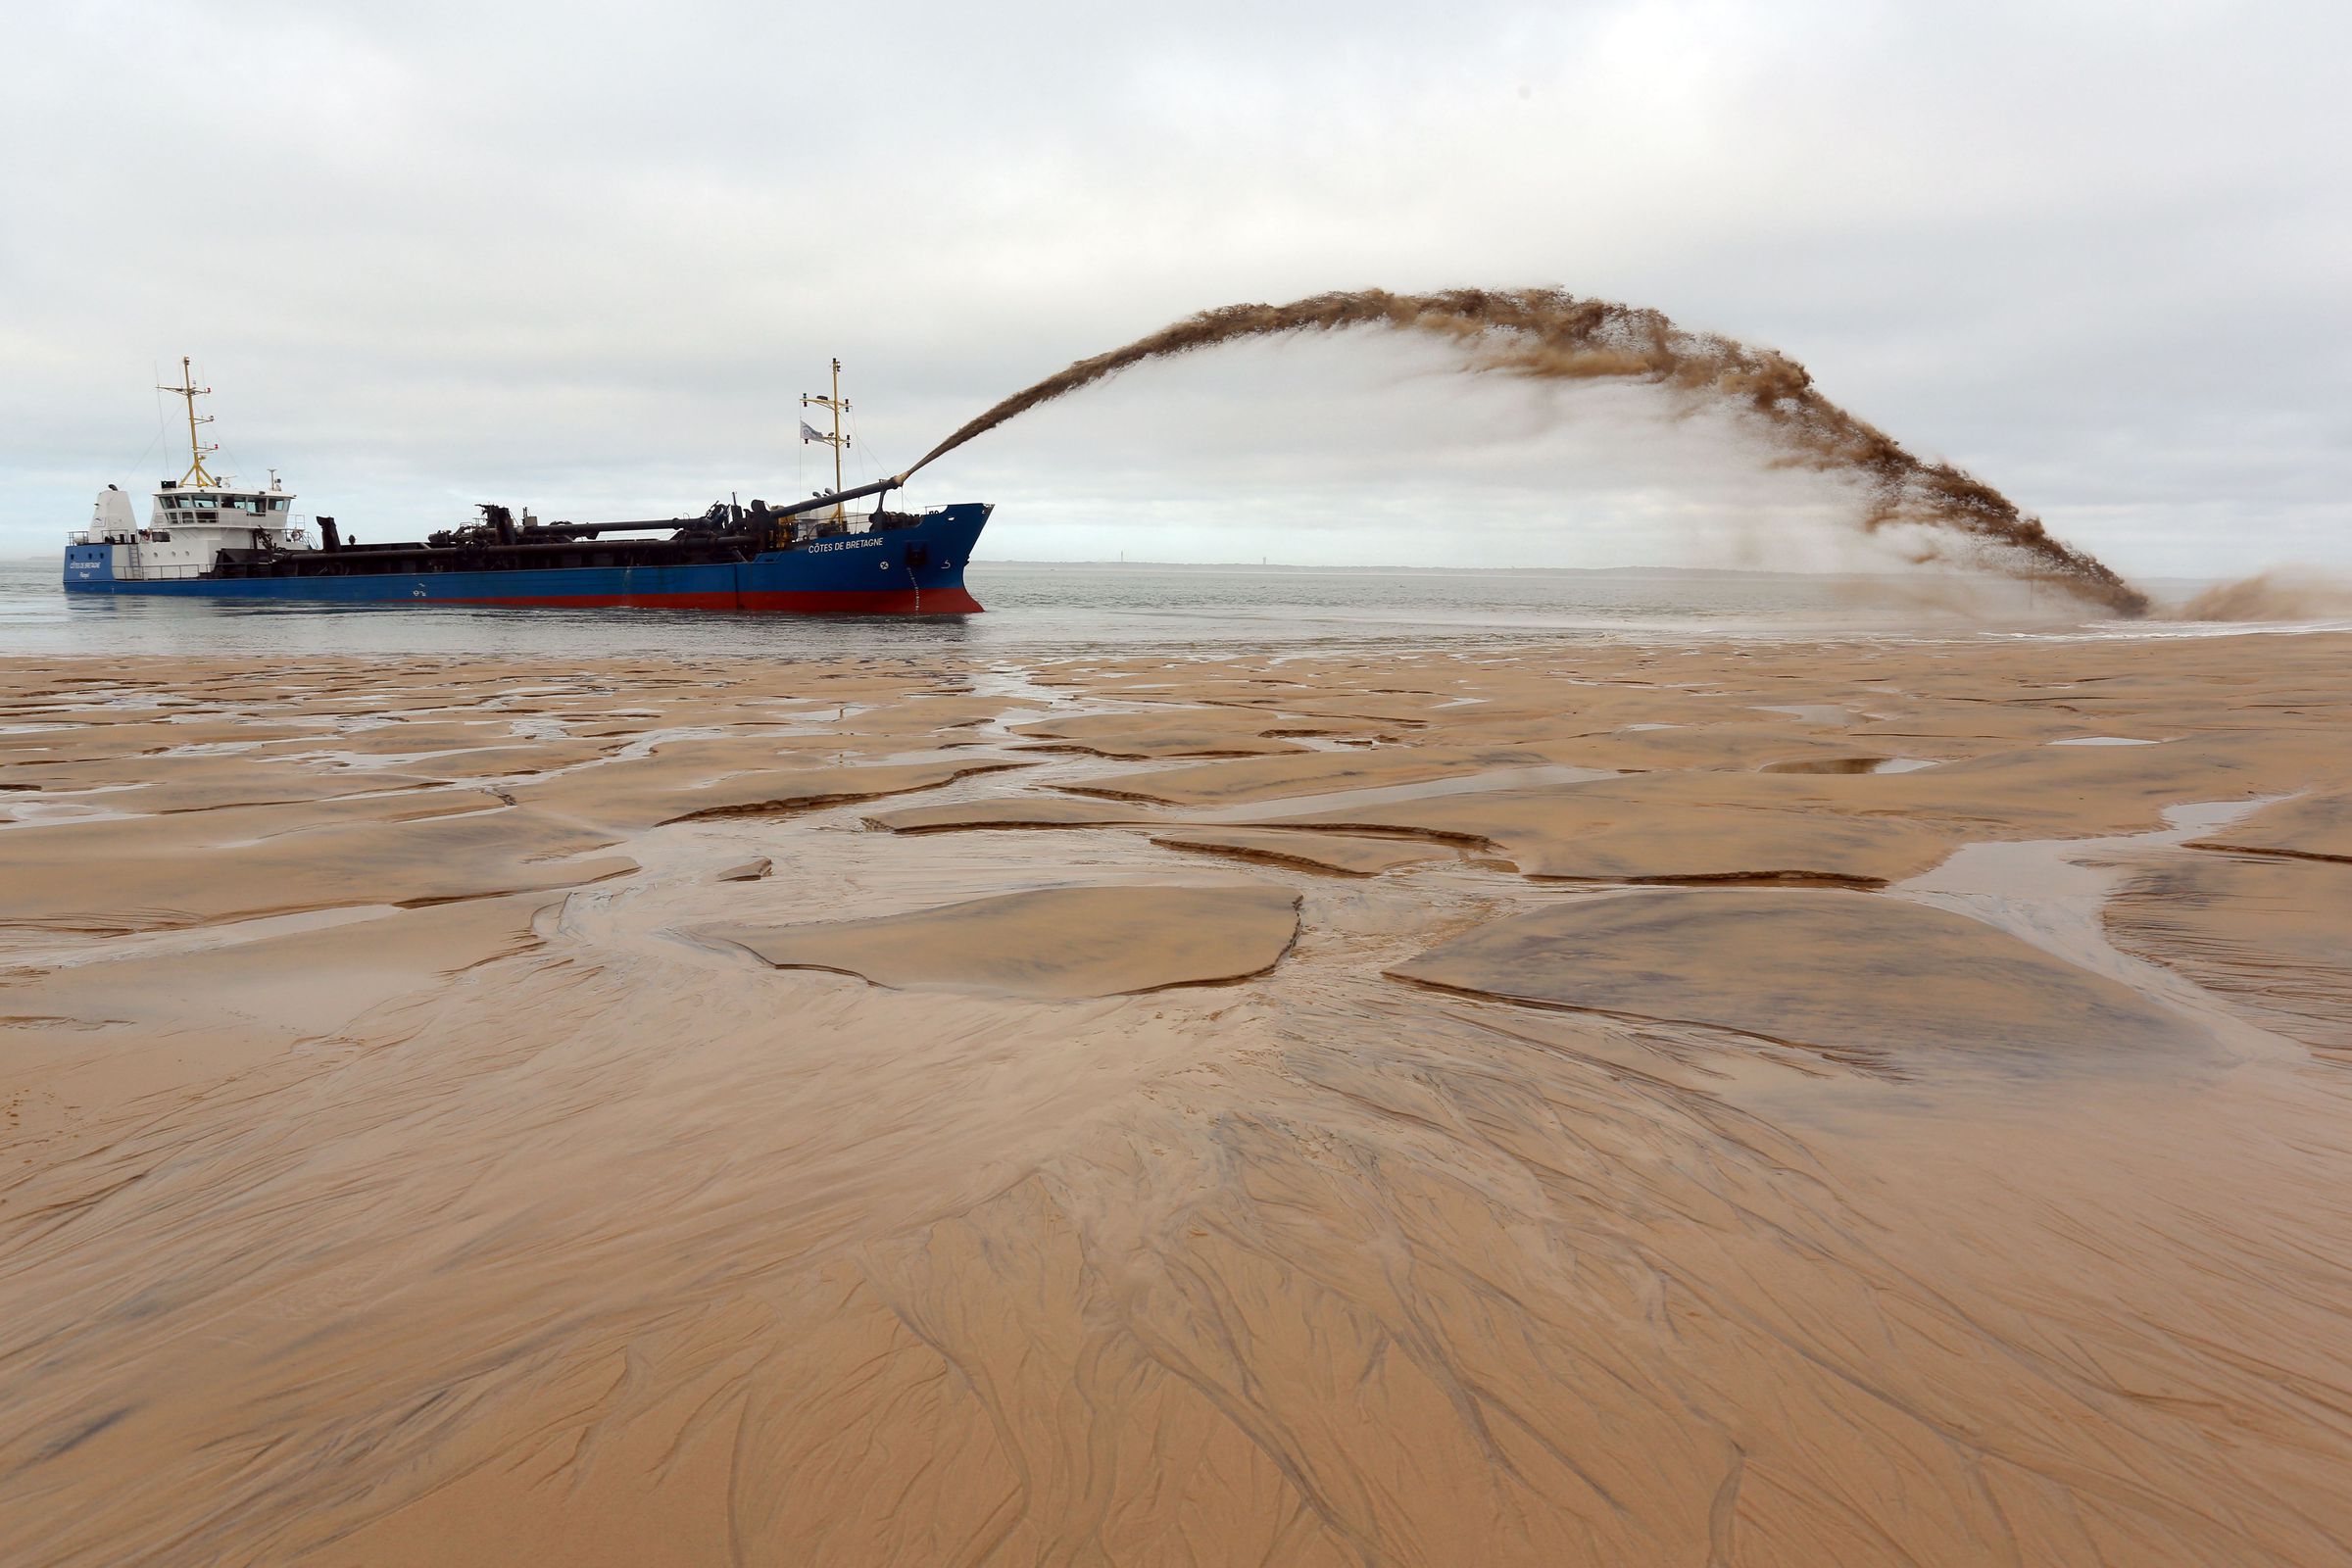 A boat sprays an arc of sandy water onto an empty beach.